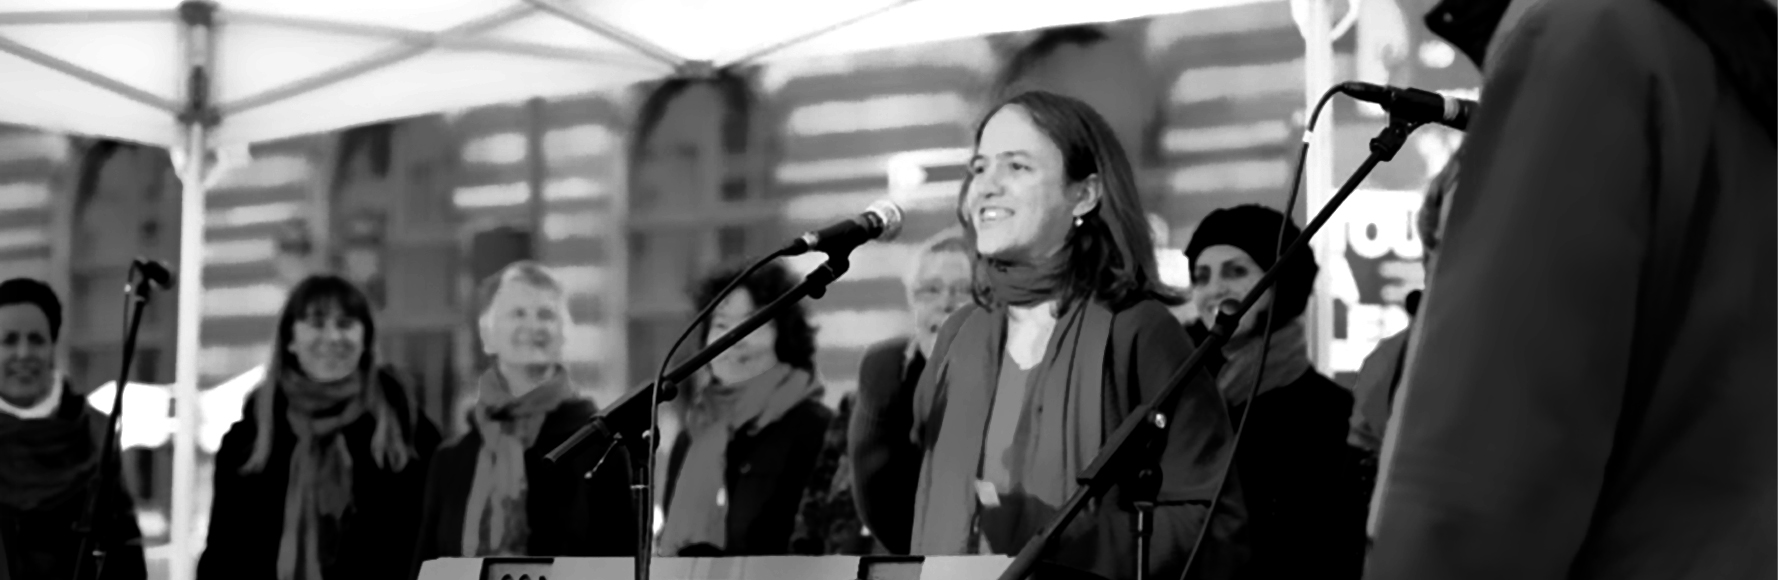 Sister Nat, chanteuse de Gospel, propose à Paris des cours de Gospel, Comédie musicale. Concerts, Spectacles, mariages dans toute la France